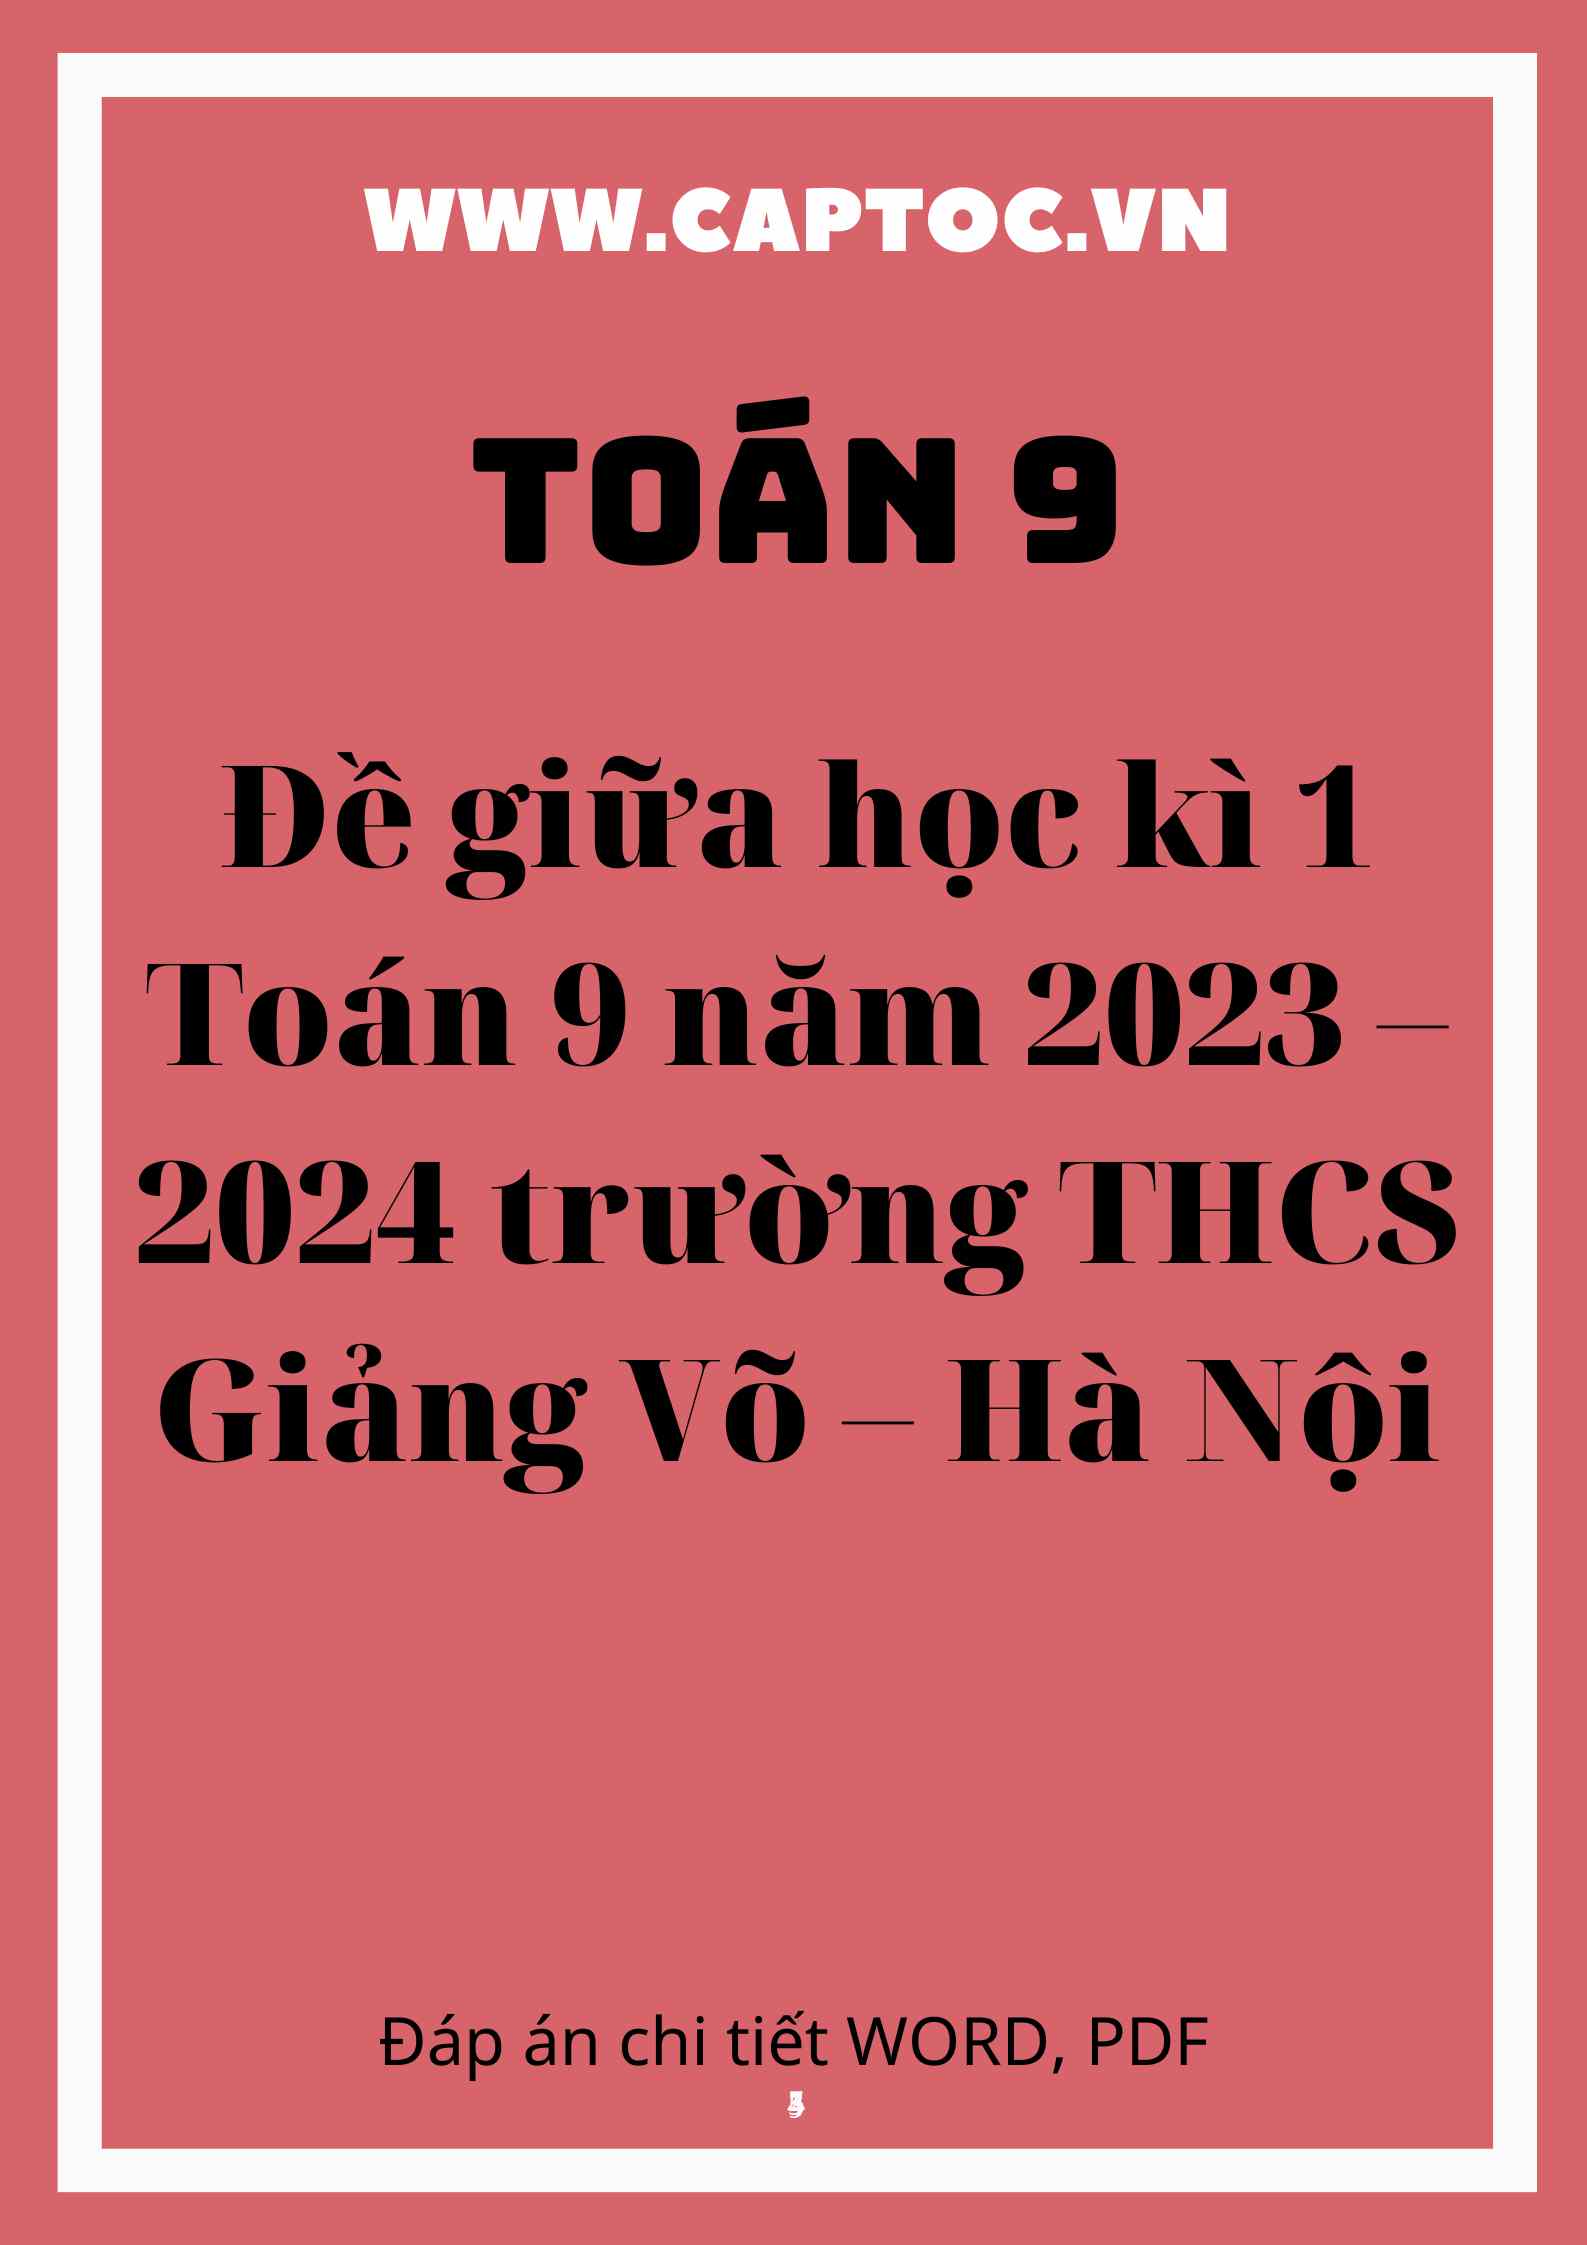 Đề giữa học kì 1 Toán 9 năm 2023 – 2024 trường THCS Giảng Võ – Hà Nội